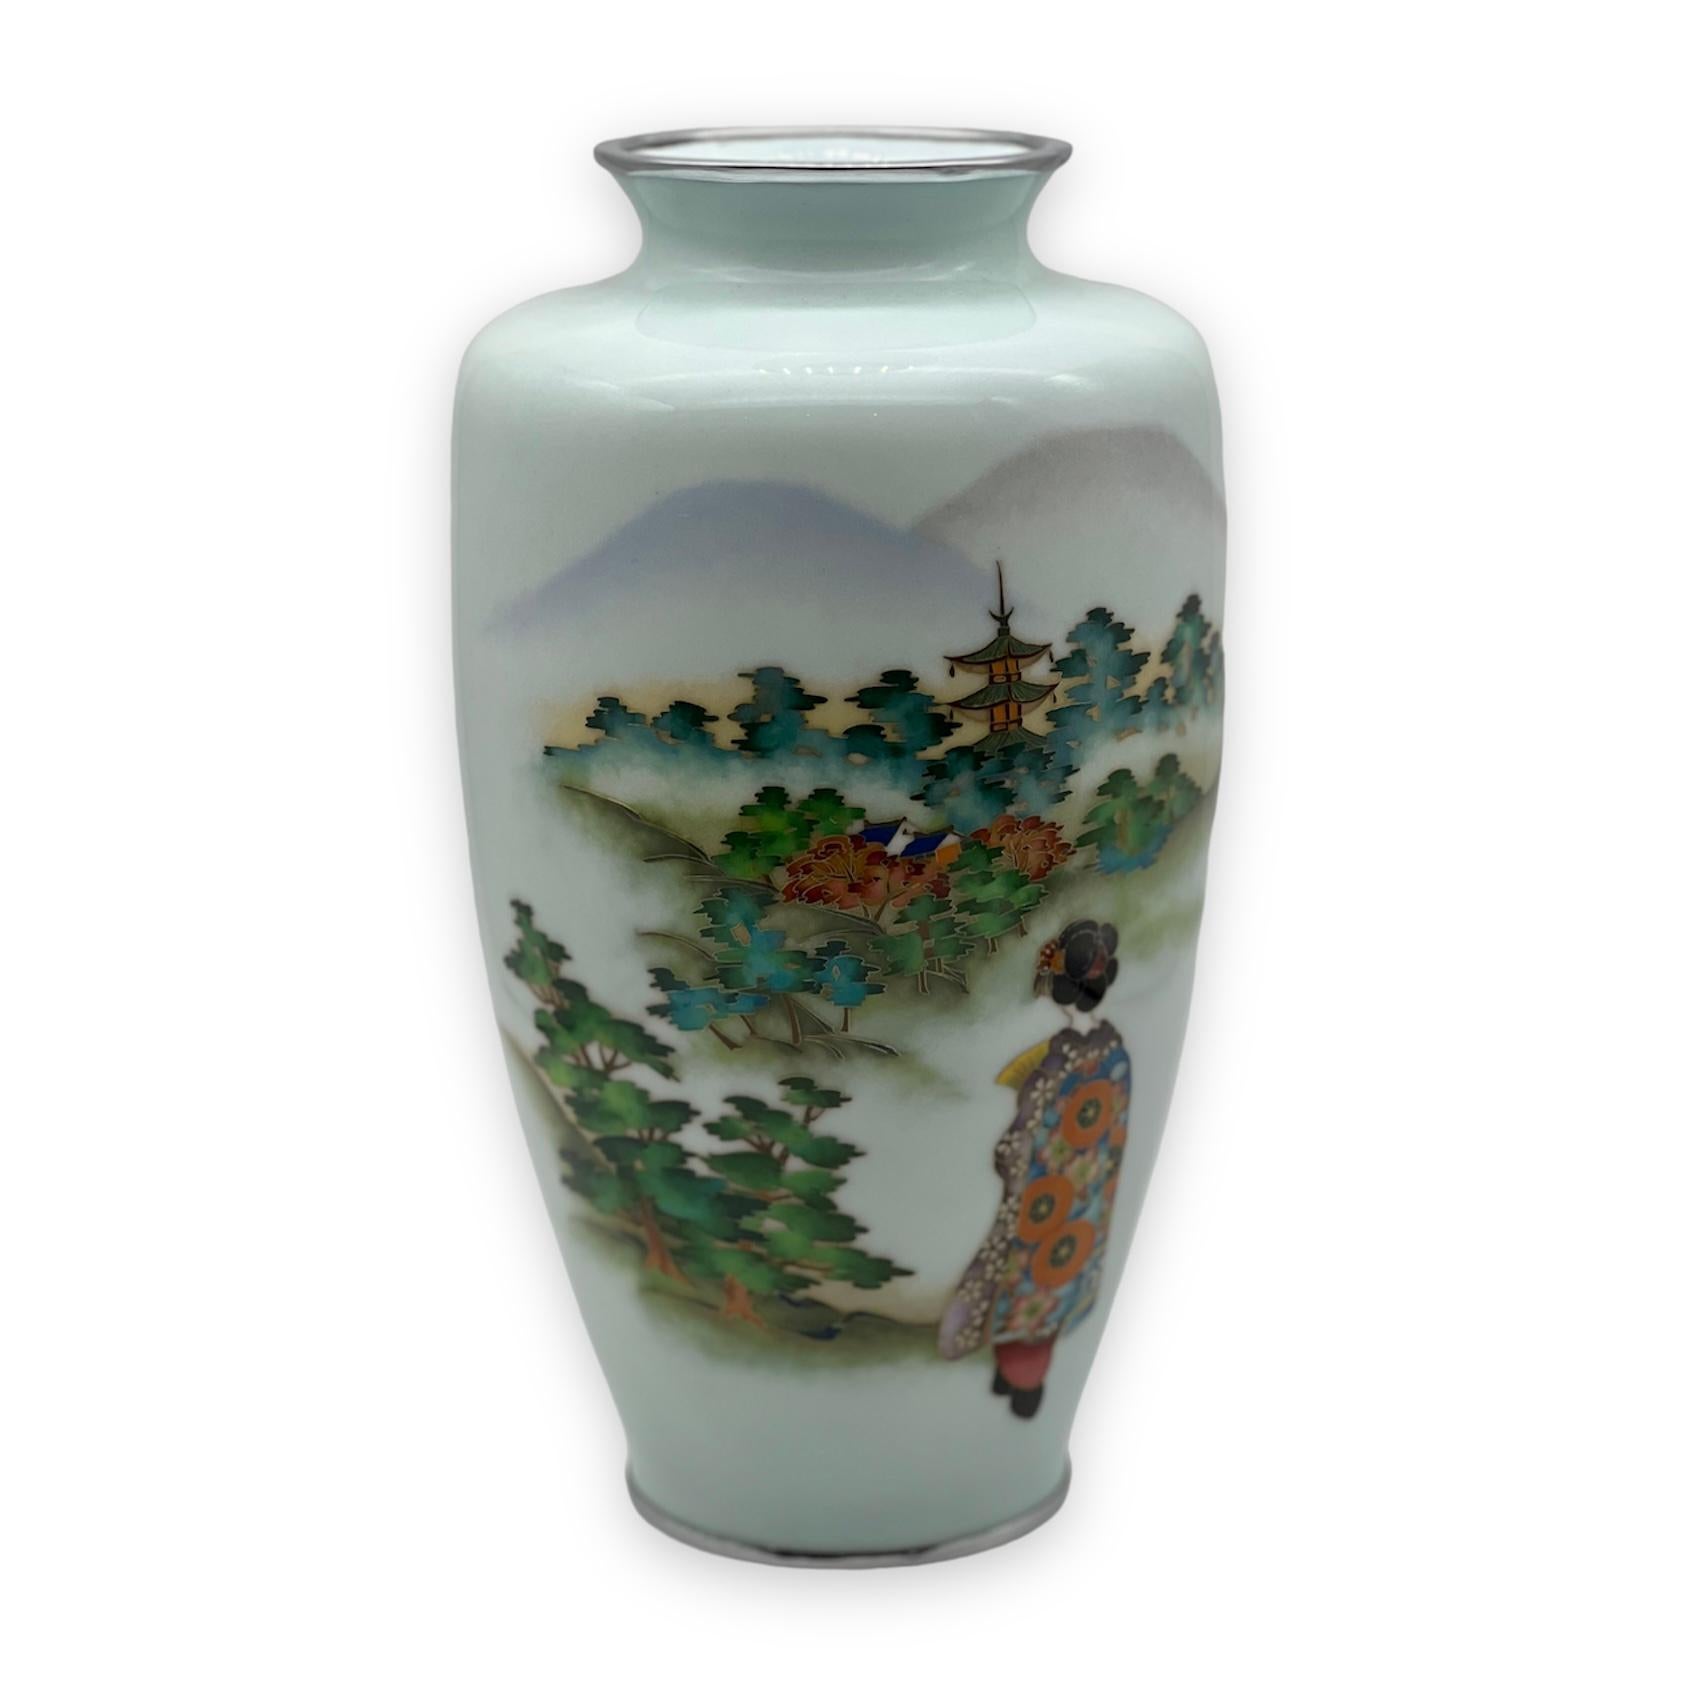 Grand vase en émail cloisonné japonais attribué à Ando Jubei.

Période Taisho (1912 - 1926)

Un grand vase balustre en cloisonné-émail travaillé en fil de musen et d'argent de différents calibres et décoré d'une dame japonaise en robe traditionnelle